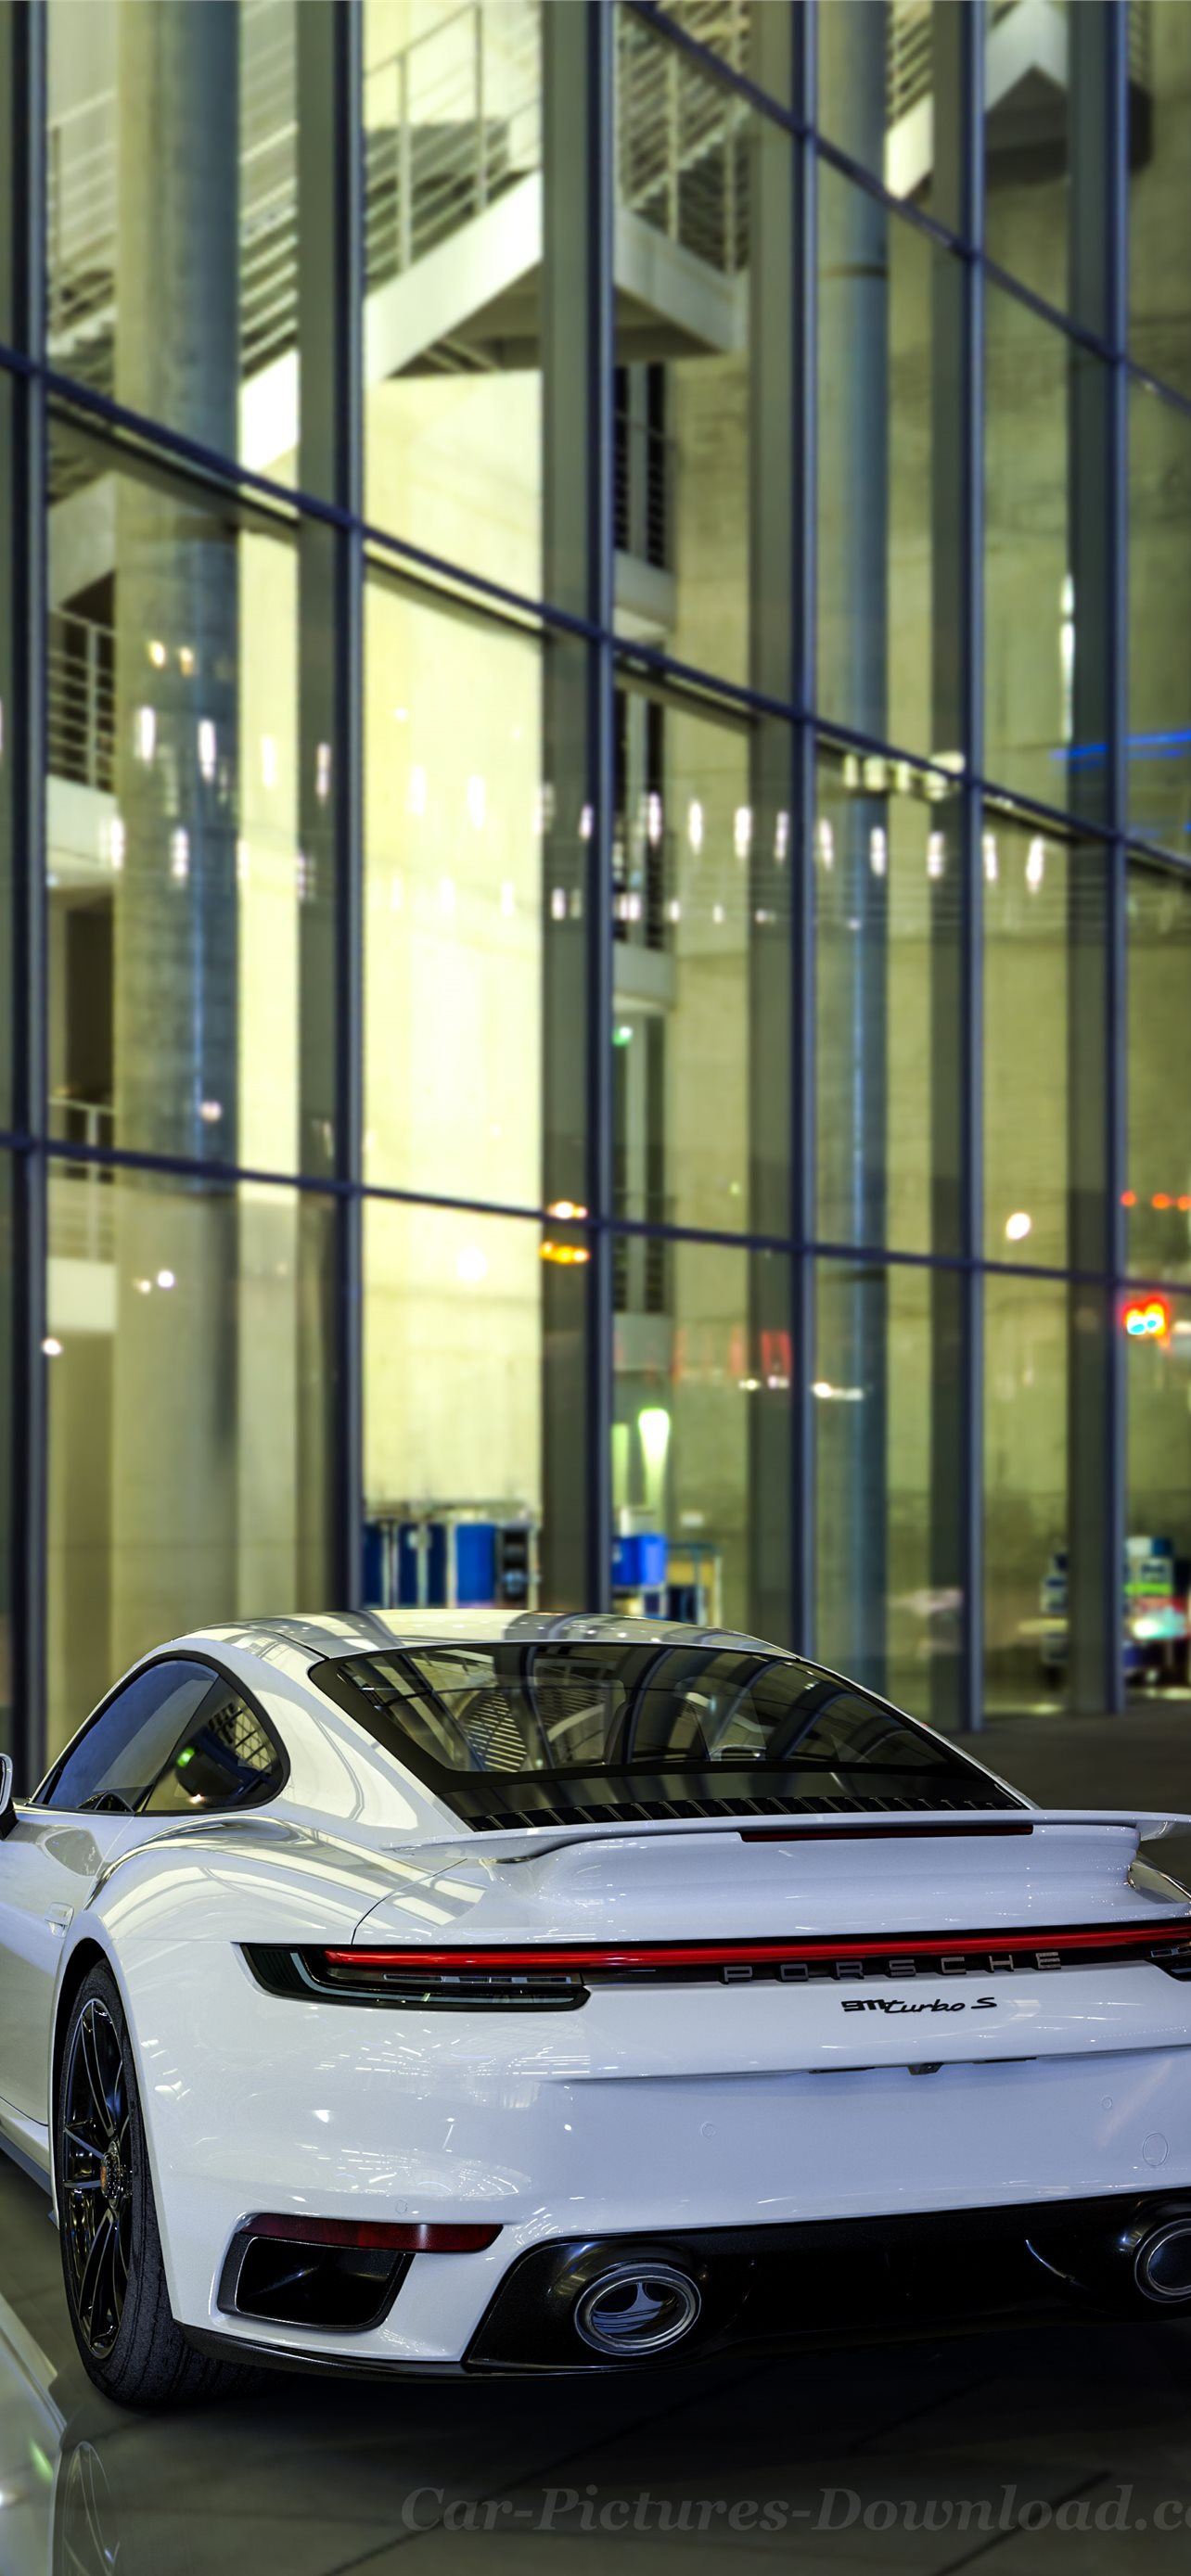 Chiếc xe Porsche 911 Cabriolet luôn là niềm mơ ước của nhiều người yêu thích tốc độ và xe hơi. Hãy cùng ngắm nhìn những hình ảnh ngoạn mục của chiếc xe này để cảm nhận được sự đam mê và phong cách thượng lưu.